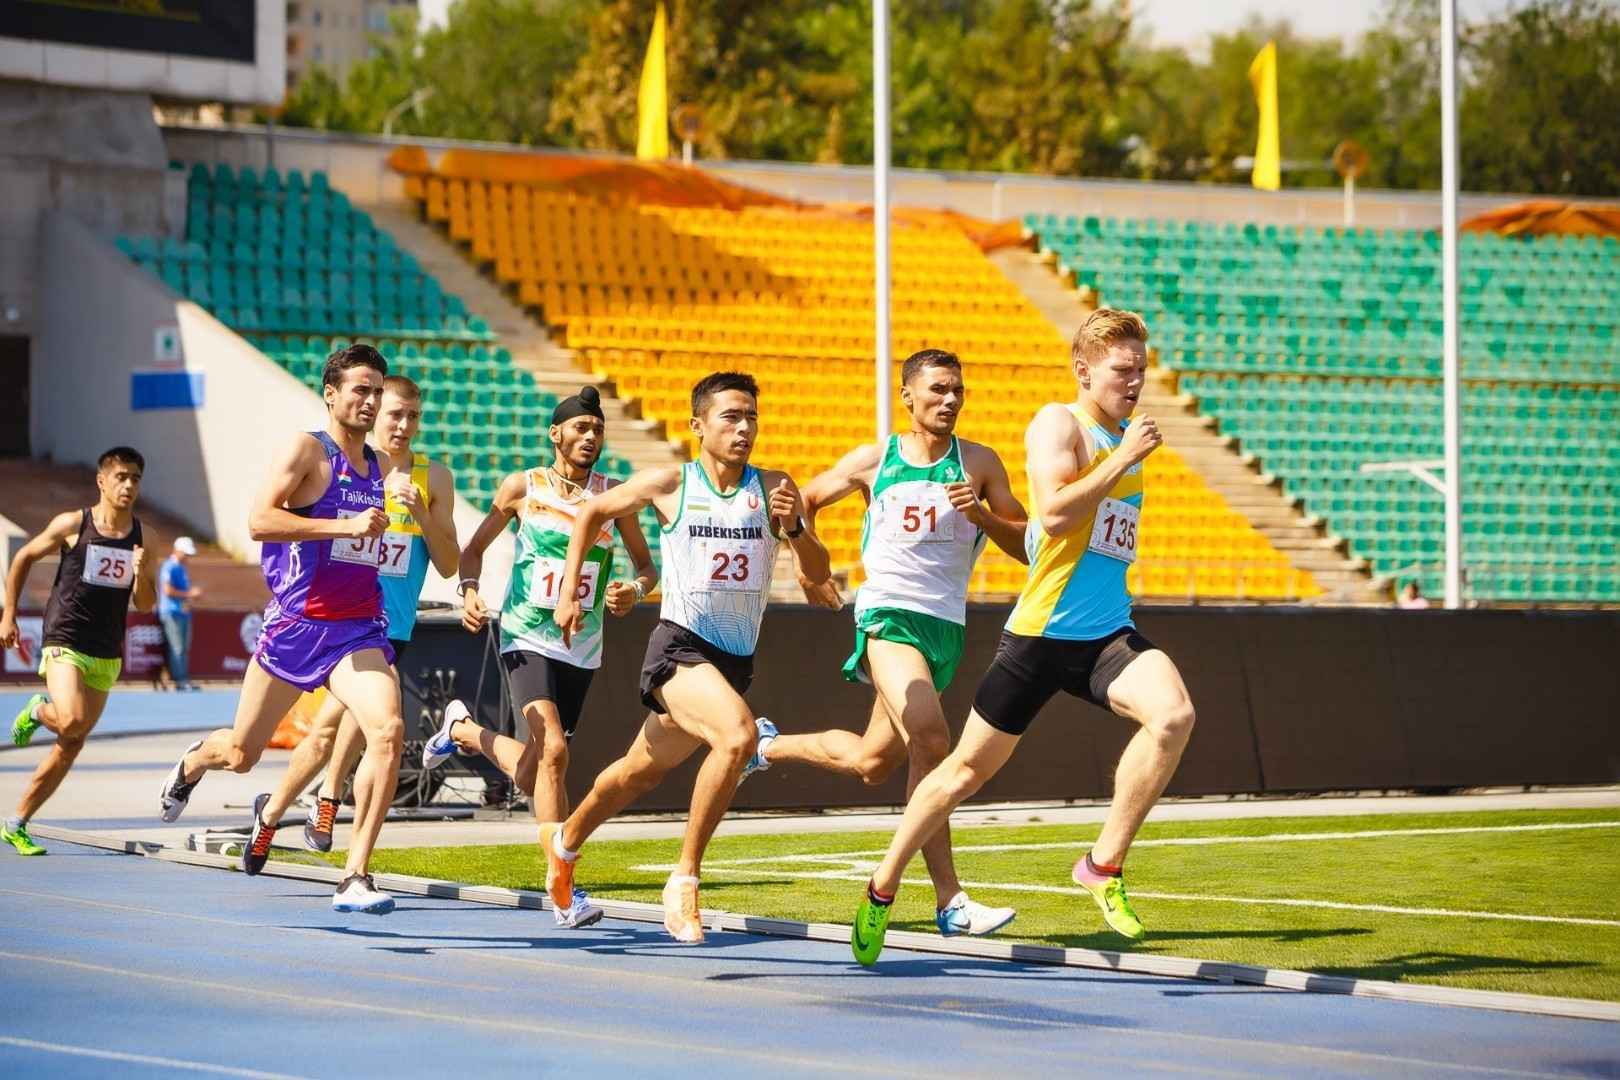 Вы сейчас просматриваете В Алматы пройдет традицонный международный турнир по легкой атлетике Qosanov Memorial